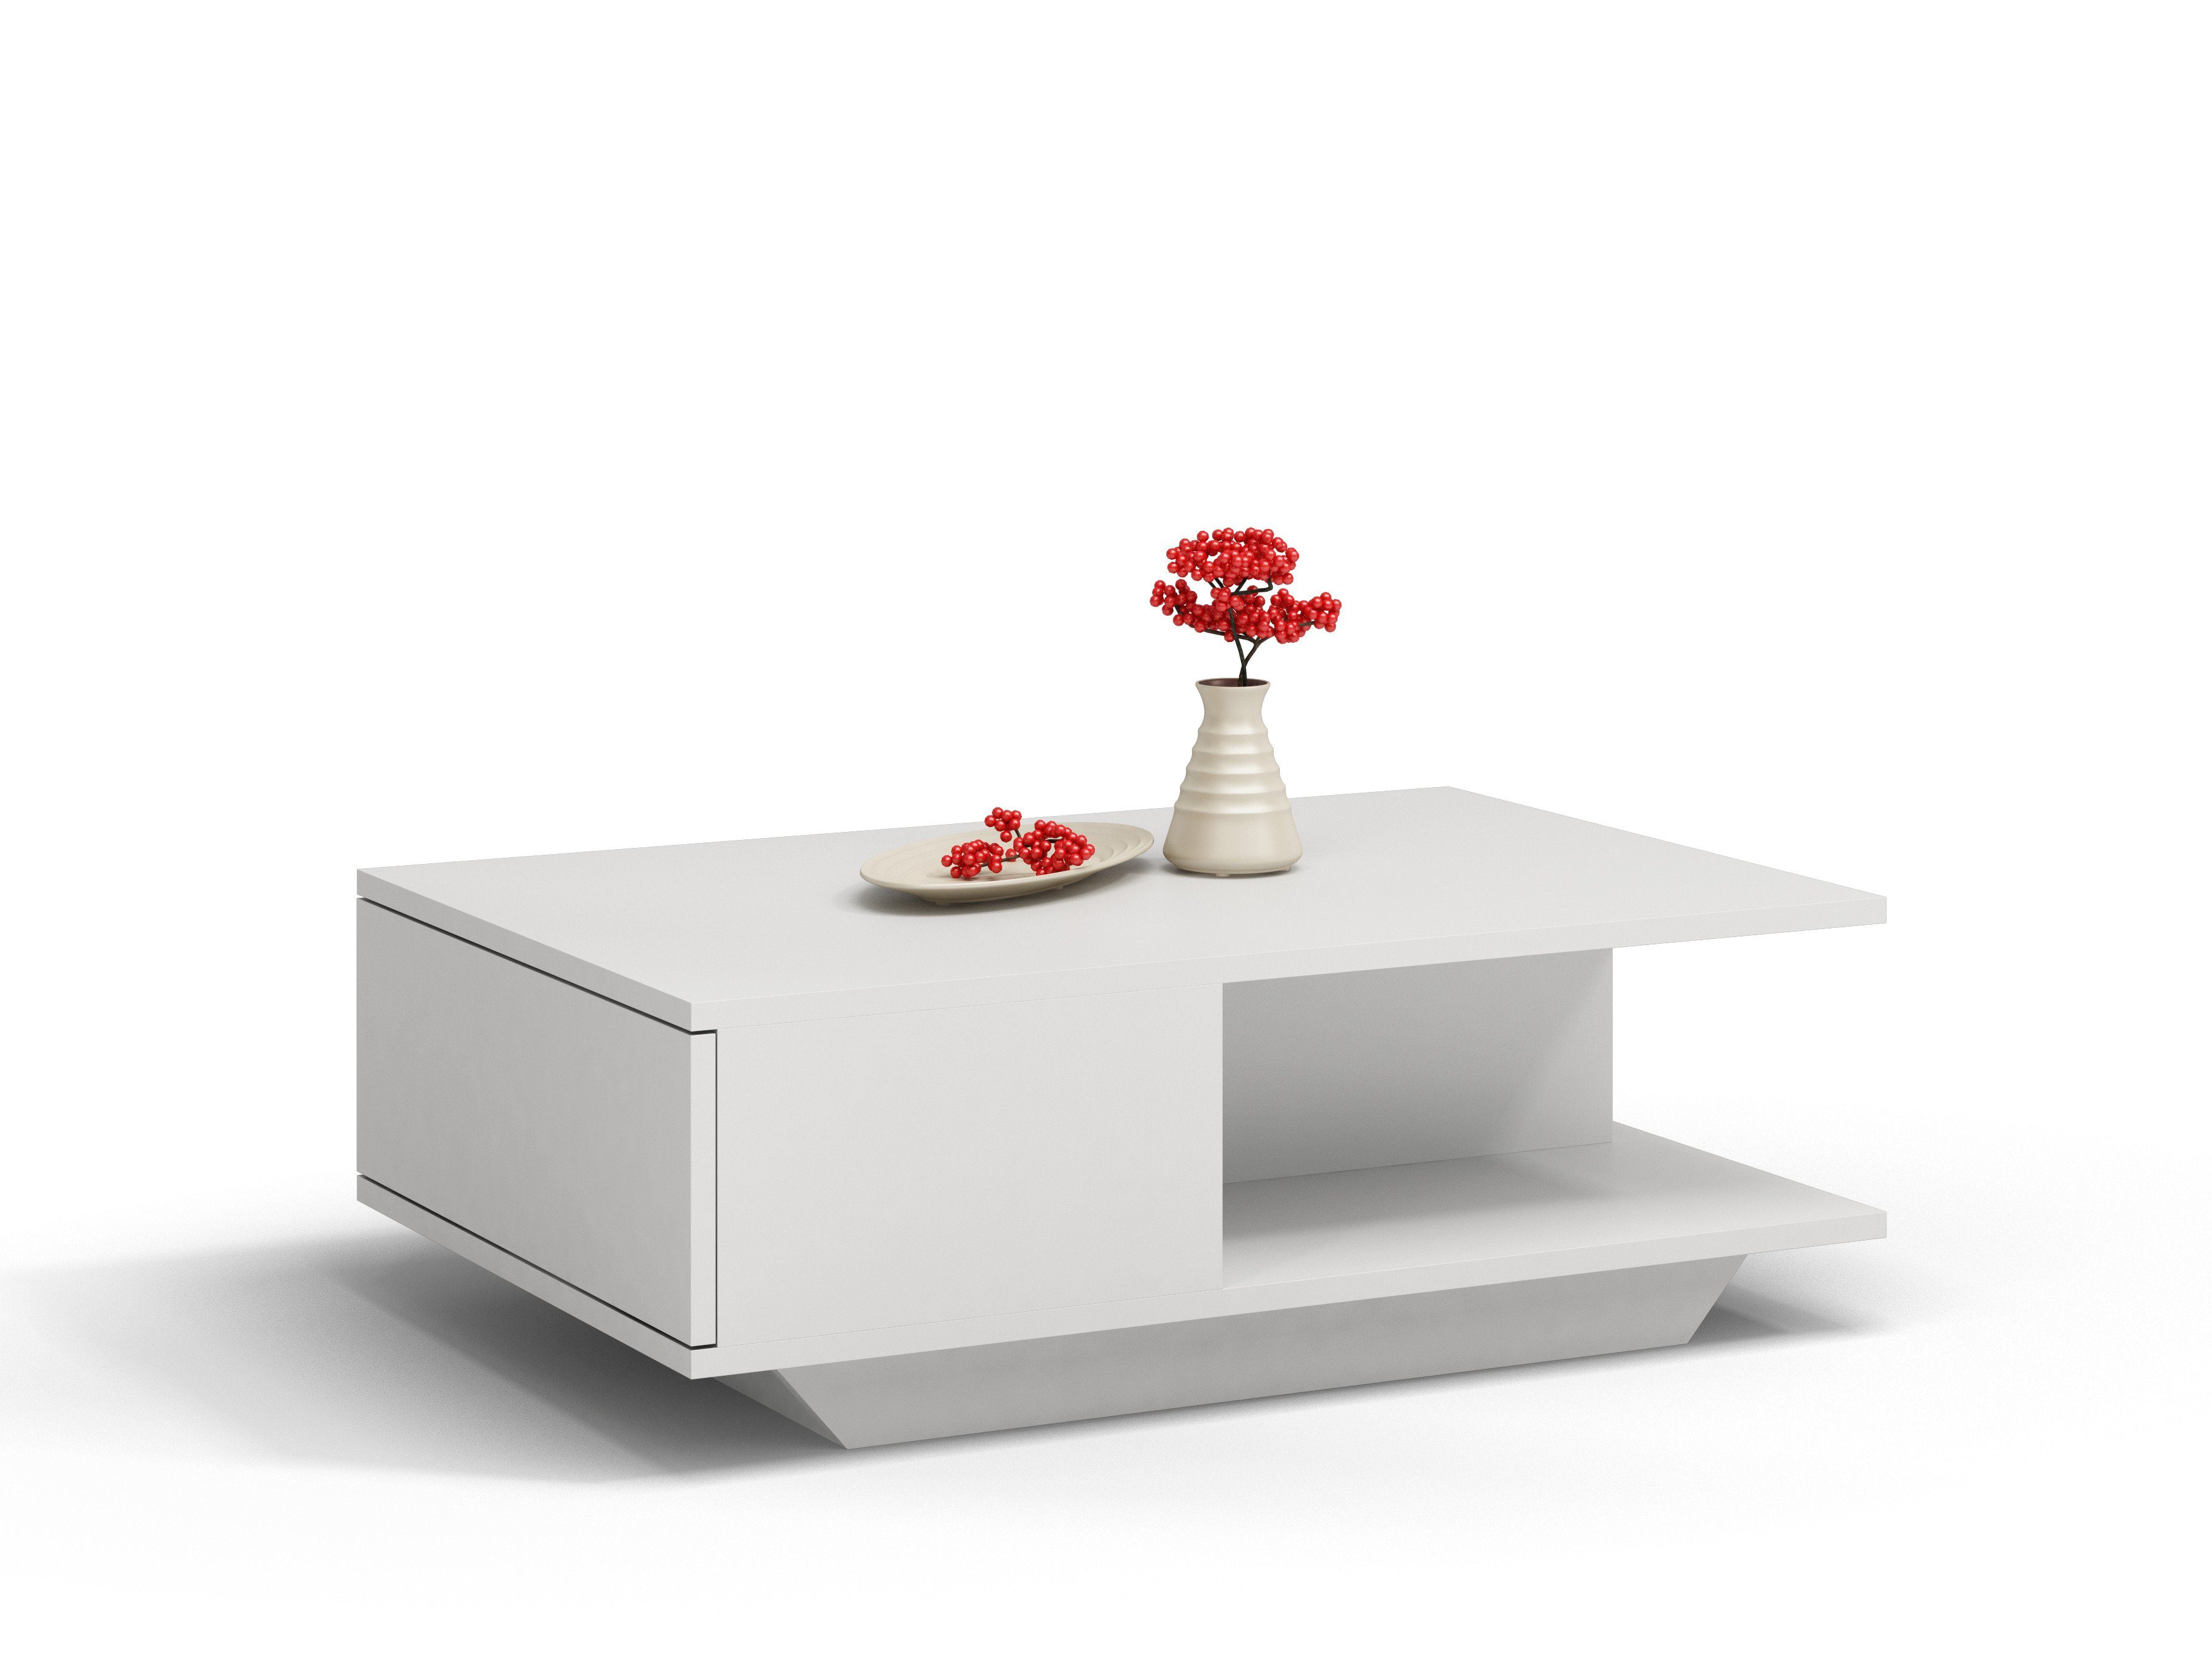 90x60x42 Beistell Design, Loft Couch, Couchtisch Tisch Beistelltisch cm kratzfeste Wohnzimmer Home Oberfläche, (LxBxH), weiß Collective